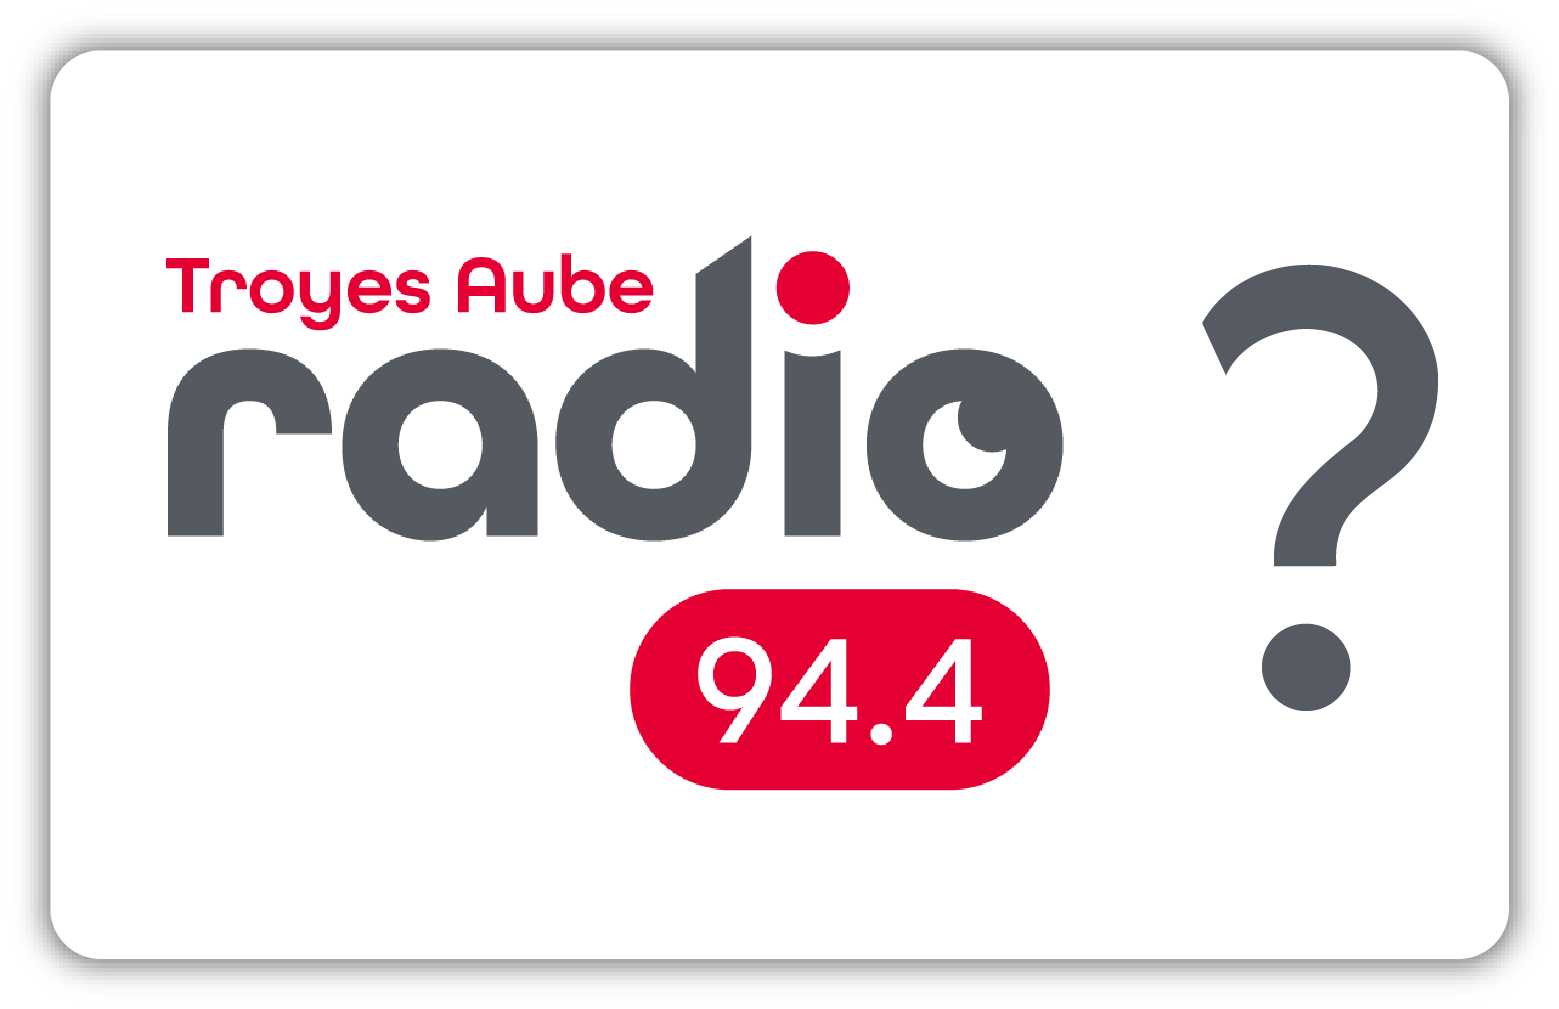 Troyes Aube Radio - Présentation Radio.png (45 KB)